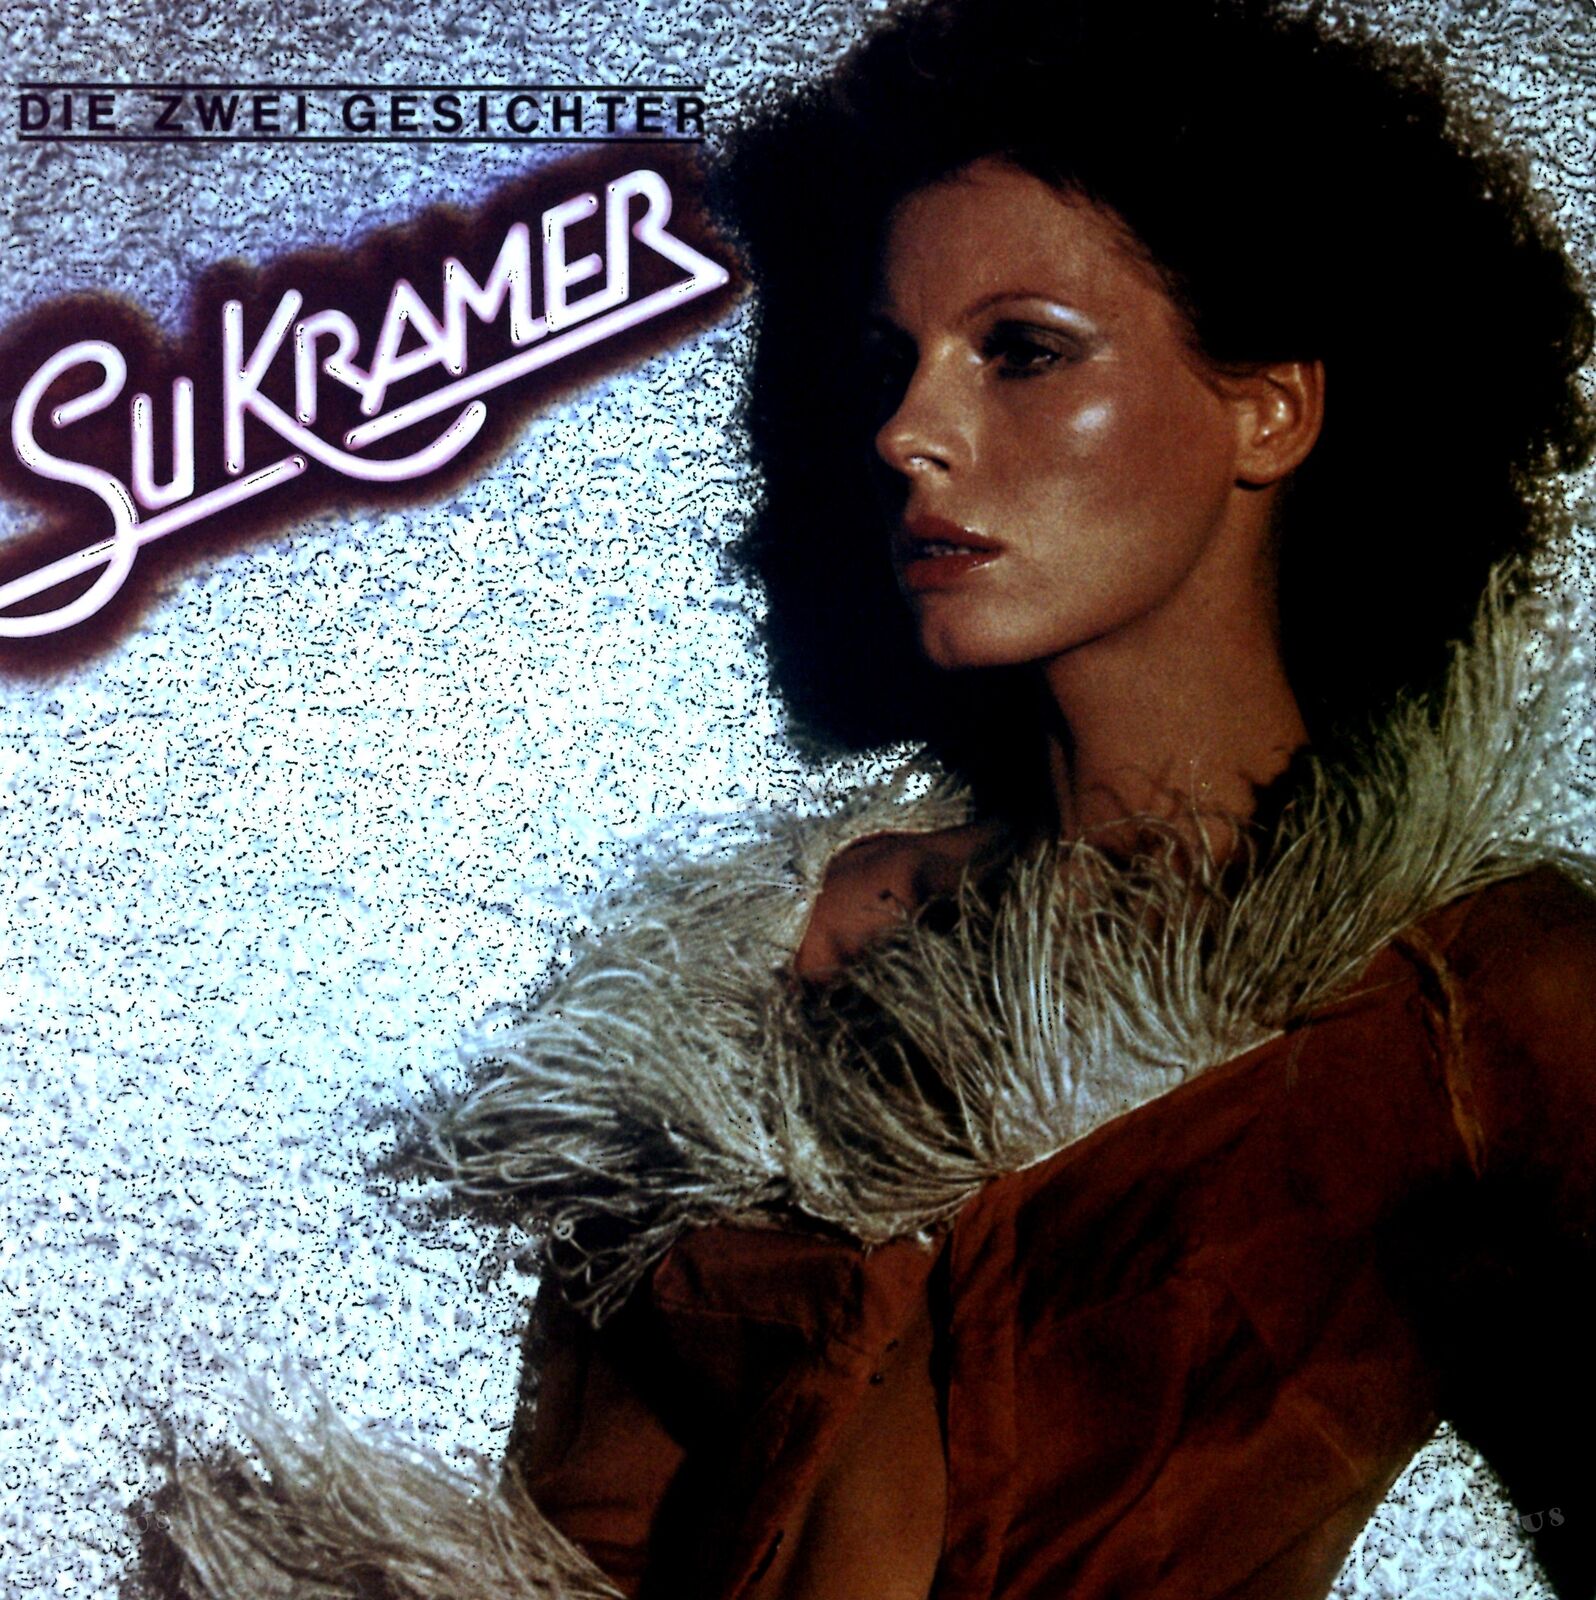 Su Kramer - Die Zwei Gesichter GER LP 1978 + 2x Insert (VG/VG+) .*